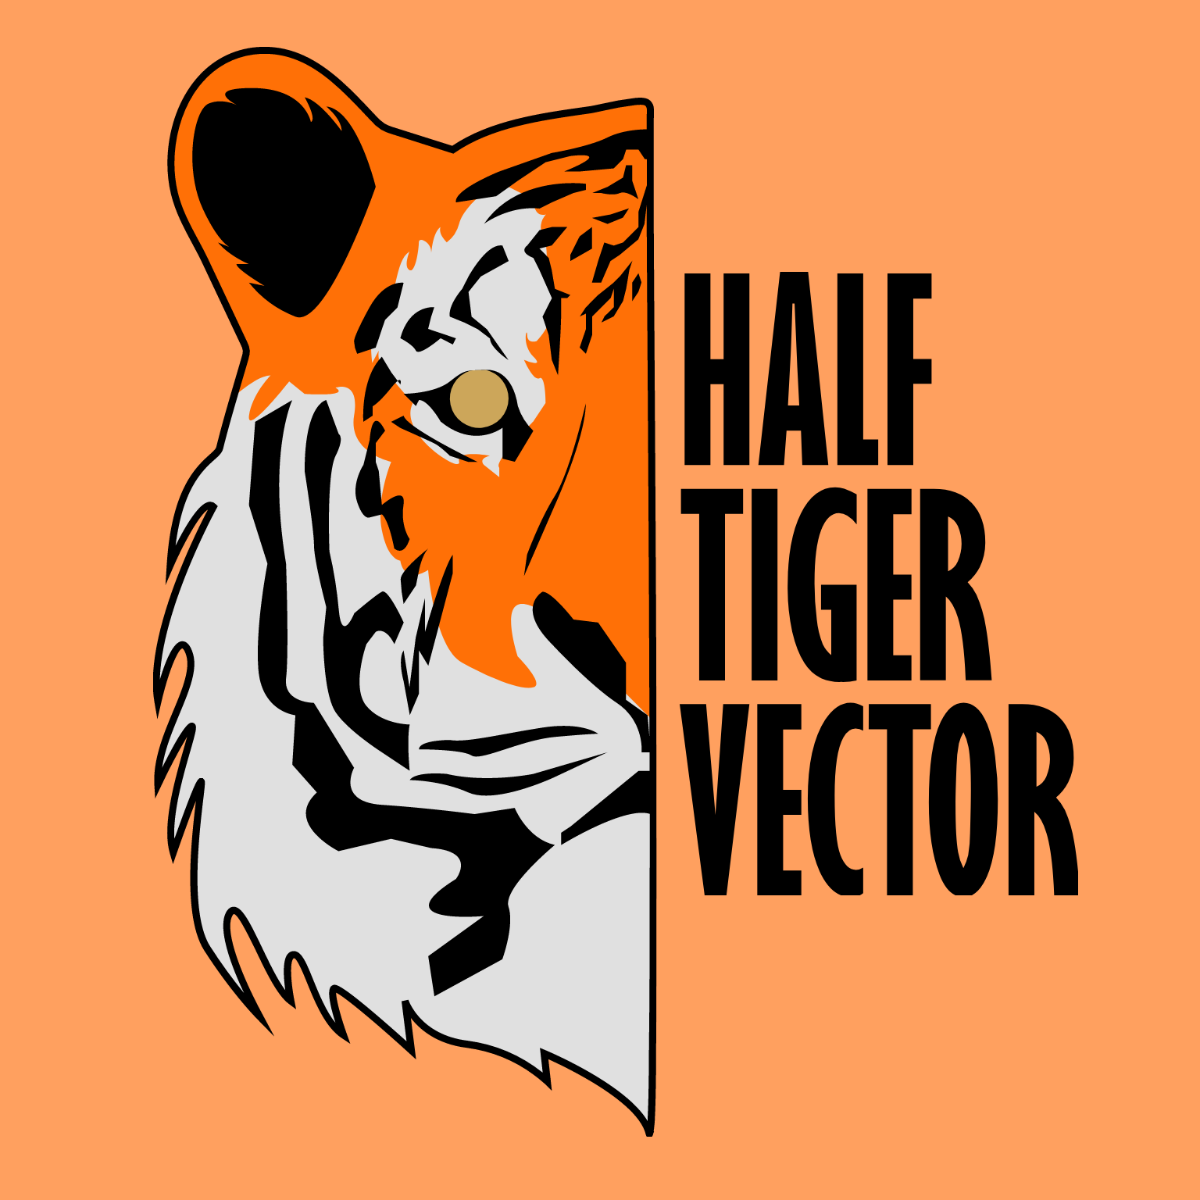 Half Tiger Vector Template